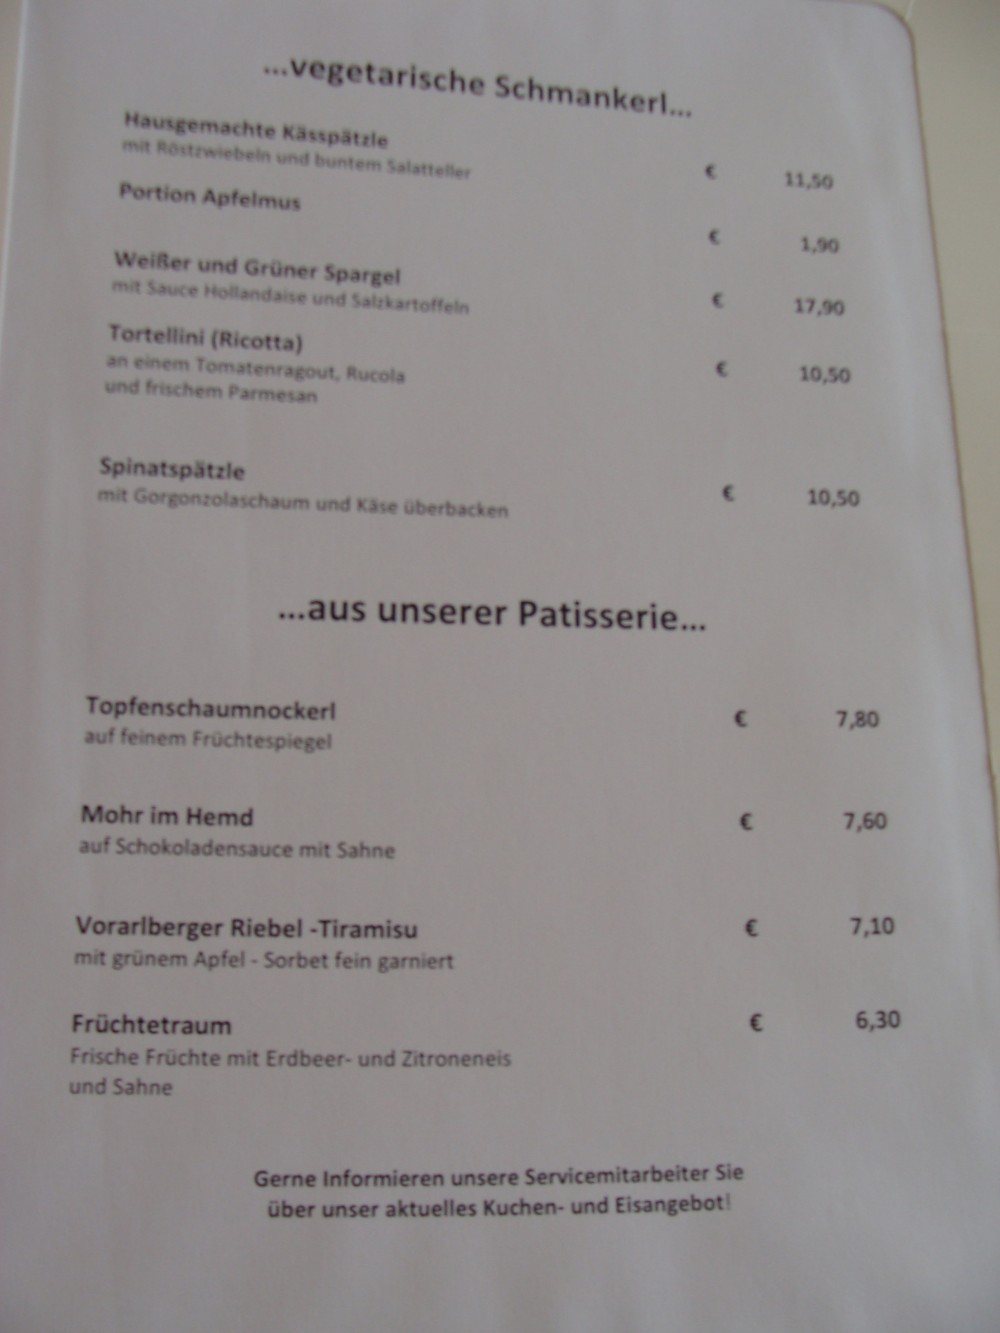 Vegetarisches und Desserts. - Wirtshaus am See - Bregenz